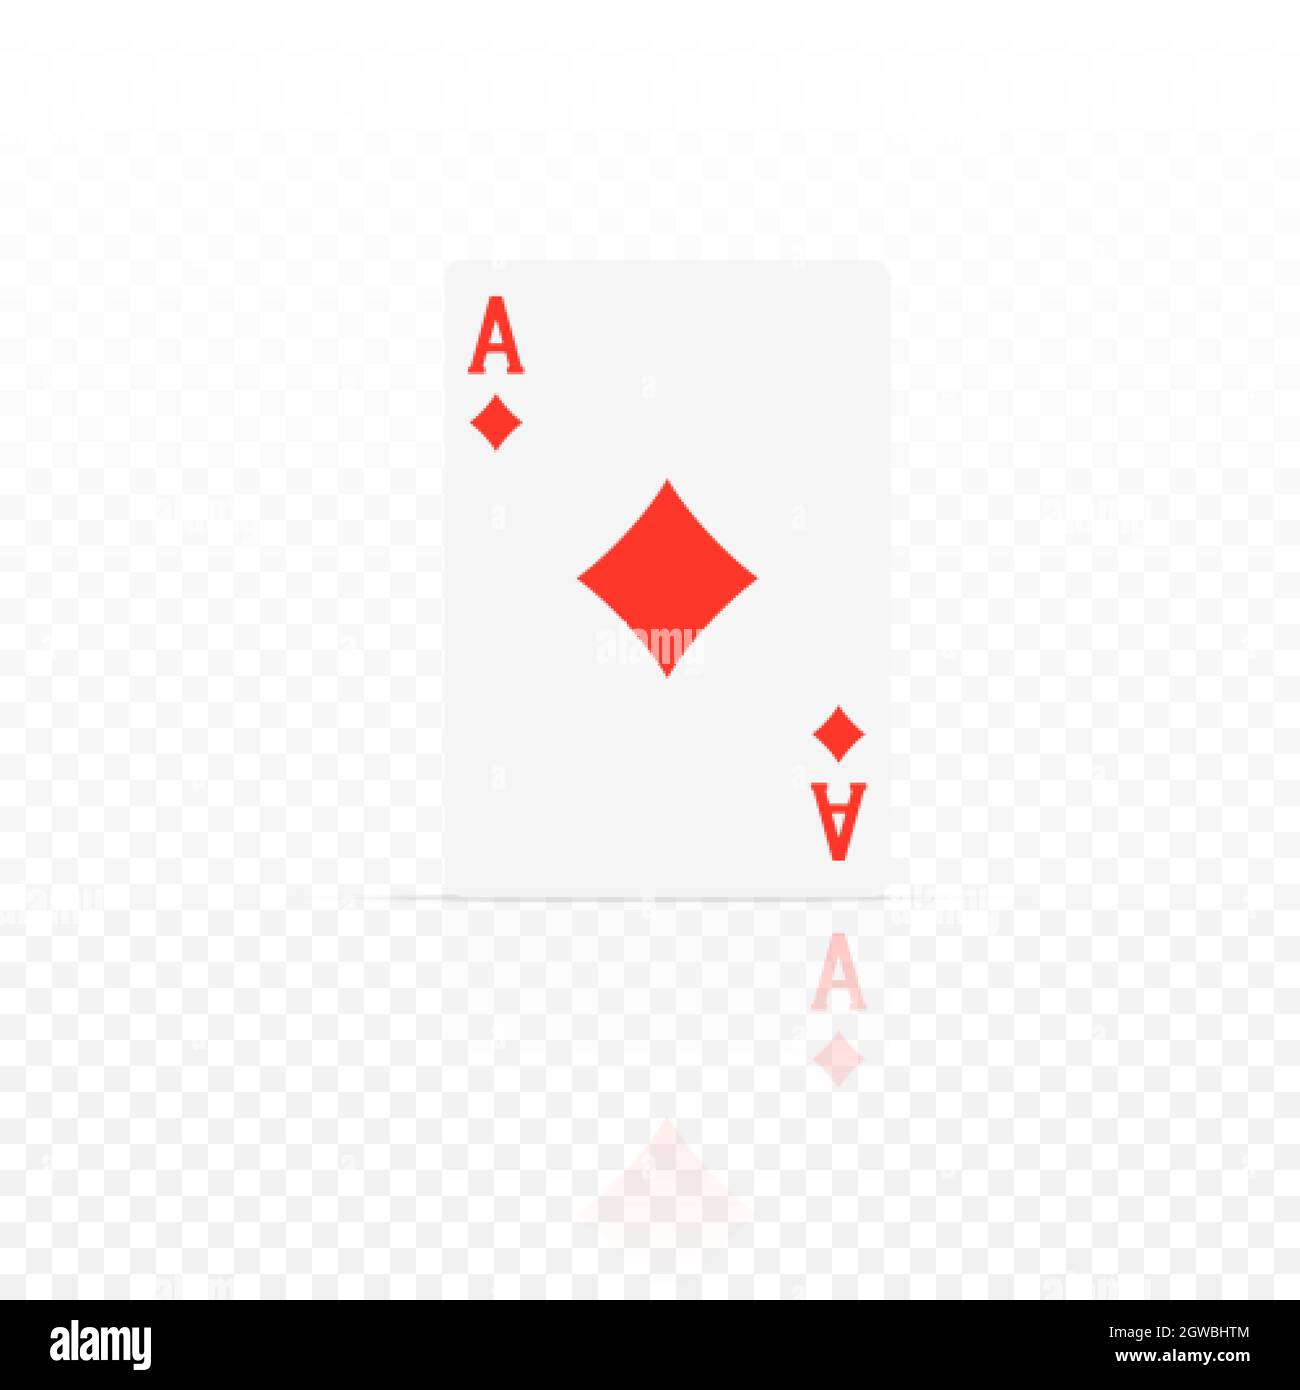 Tamburin-Ass. ACE Design Cazino Spiel Element mit transparenter Reflexion. Poker oder Blackjack realistische Karte. Vektorgrafik Stock Vektor